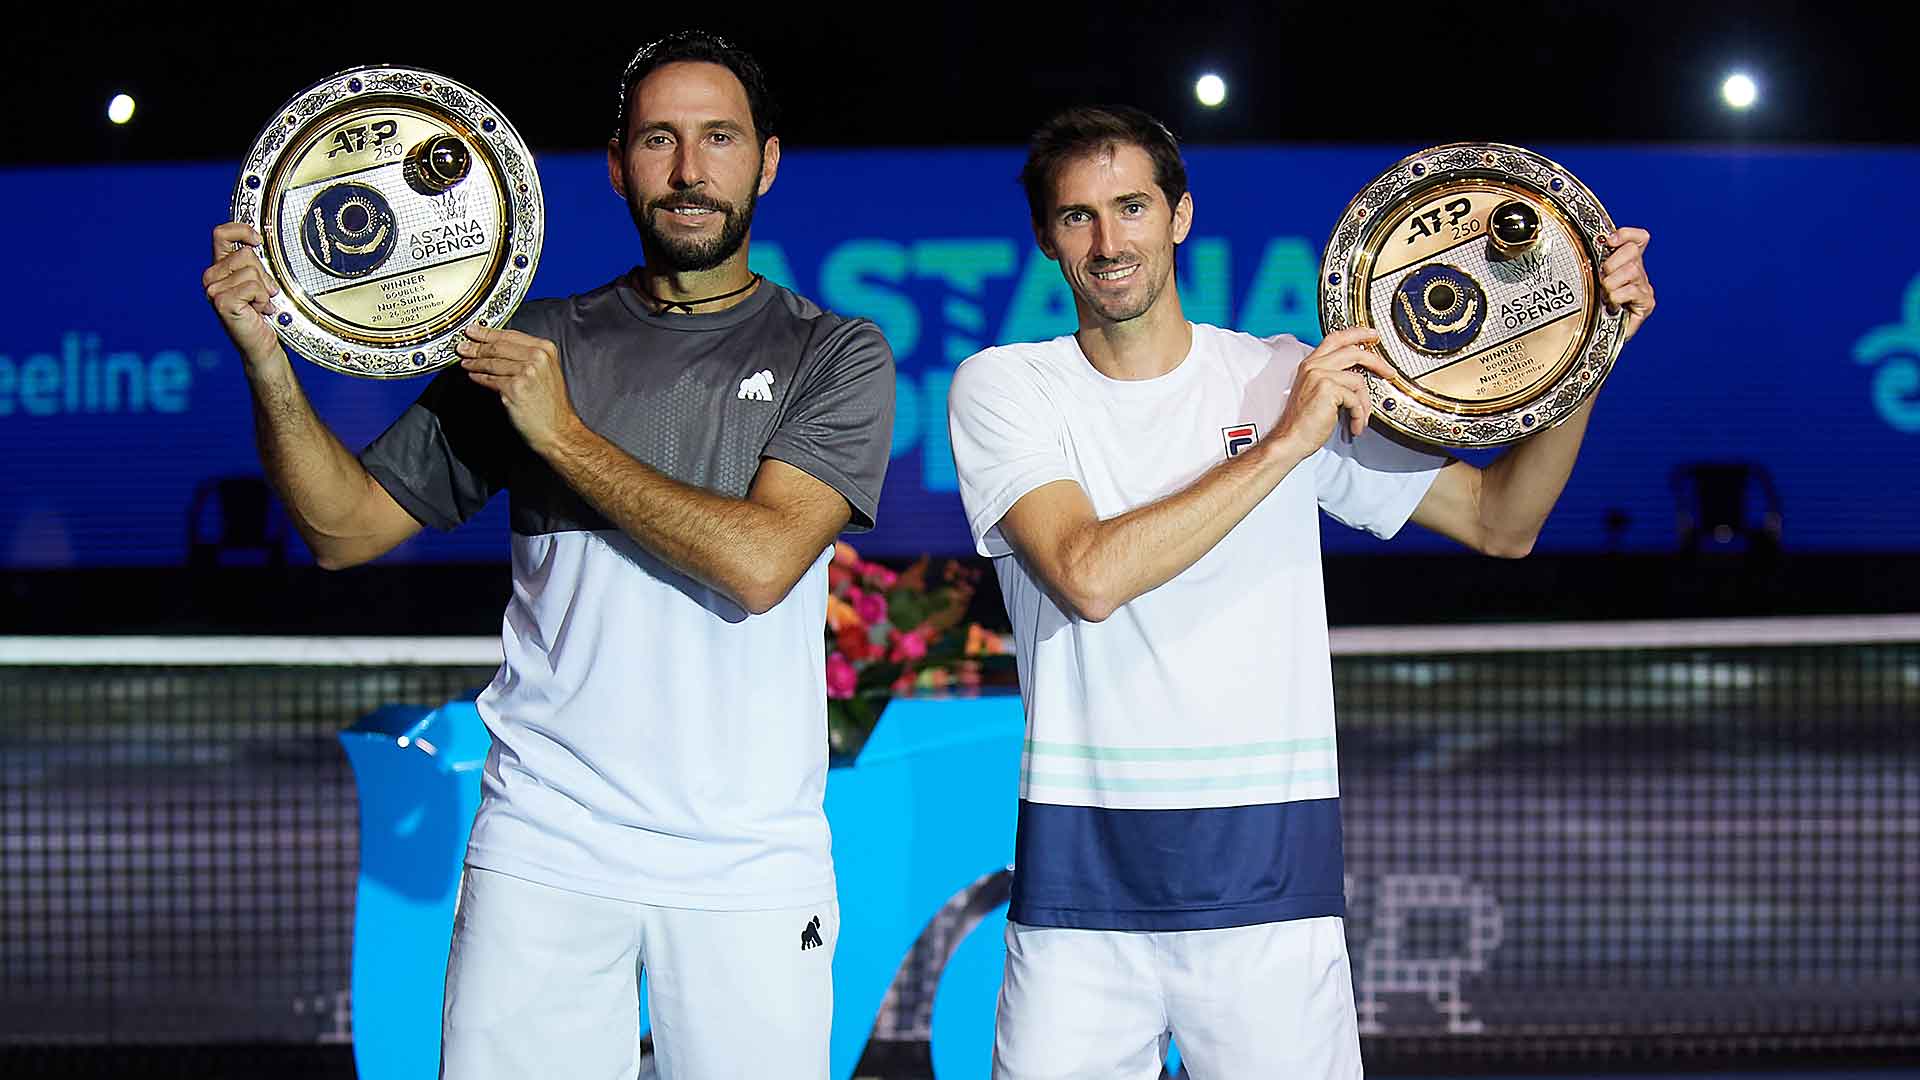 Santiago Gonzalez and Andres Molteni Seal Nur-Sultan Title ATP Tour Tennis